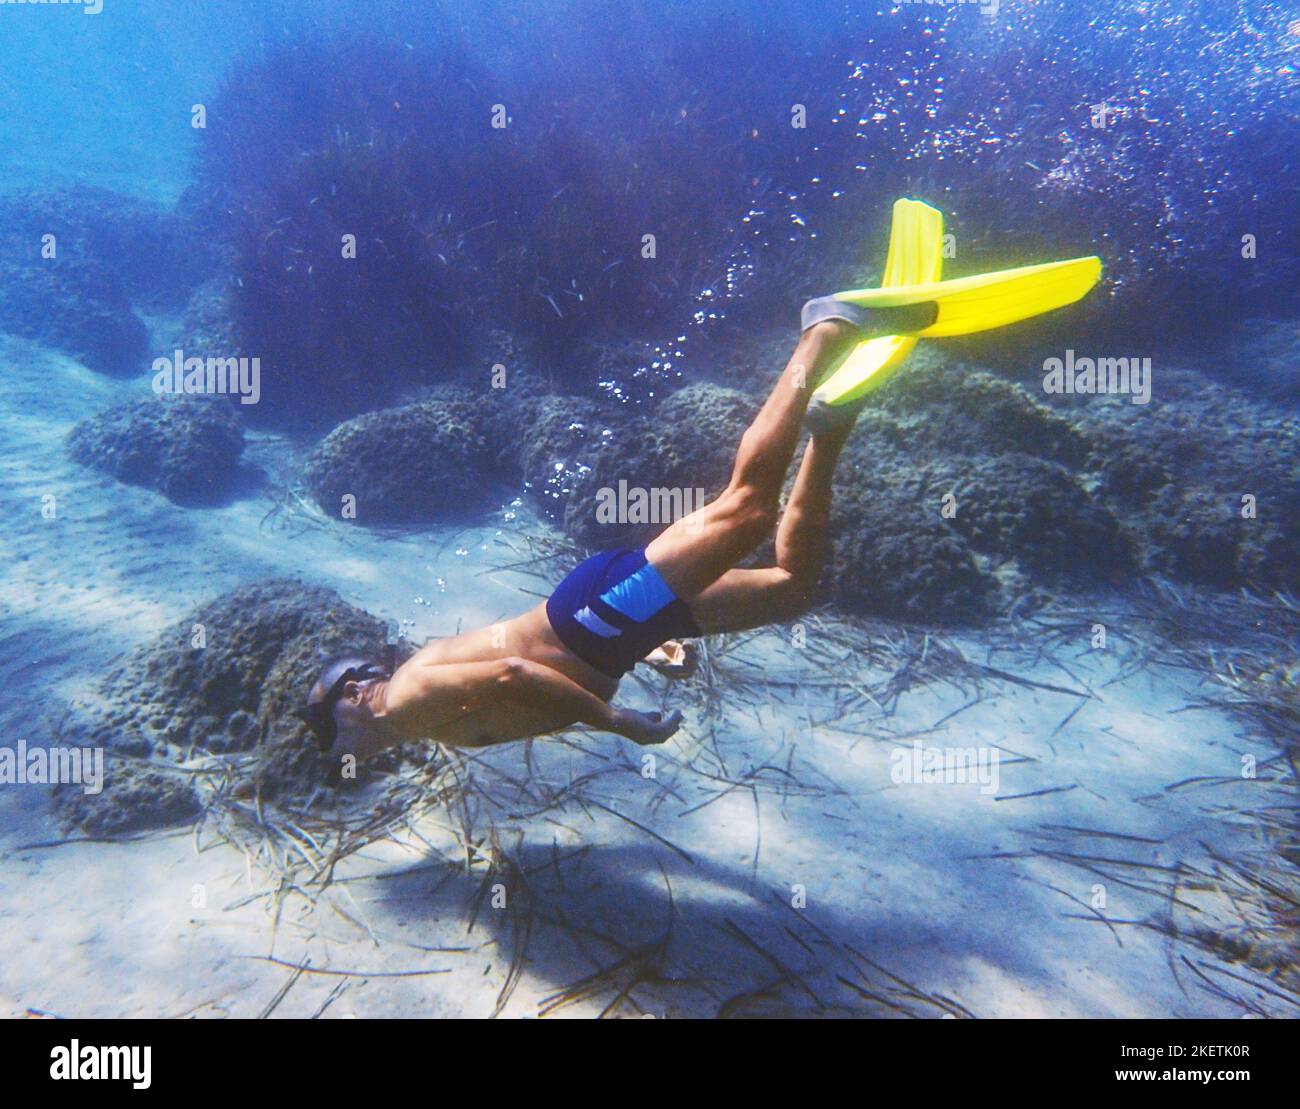 Un homme snorkeling dans la mer Méditerranée au large de Paphos, Chypre. Banque D'Images